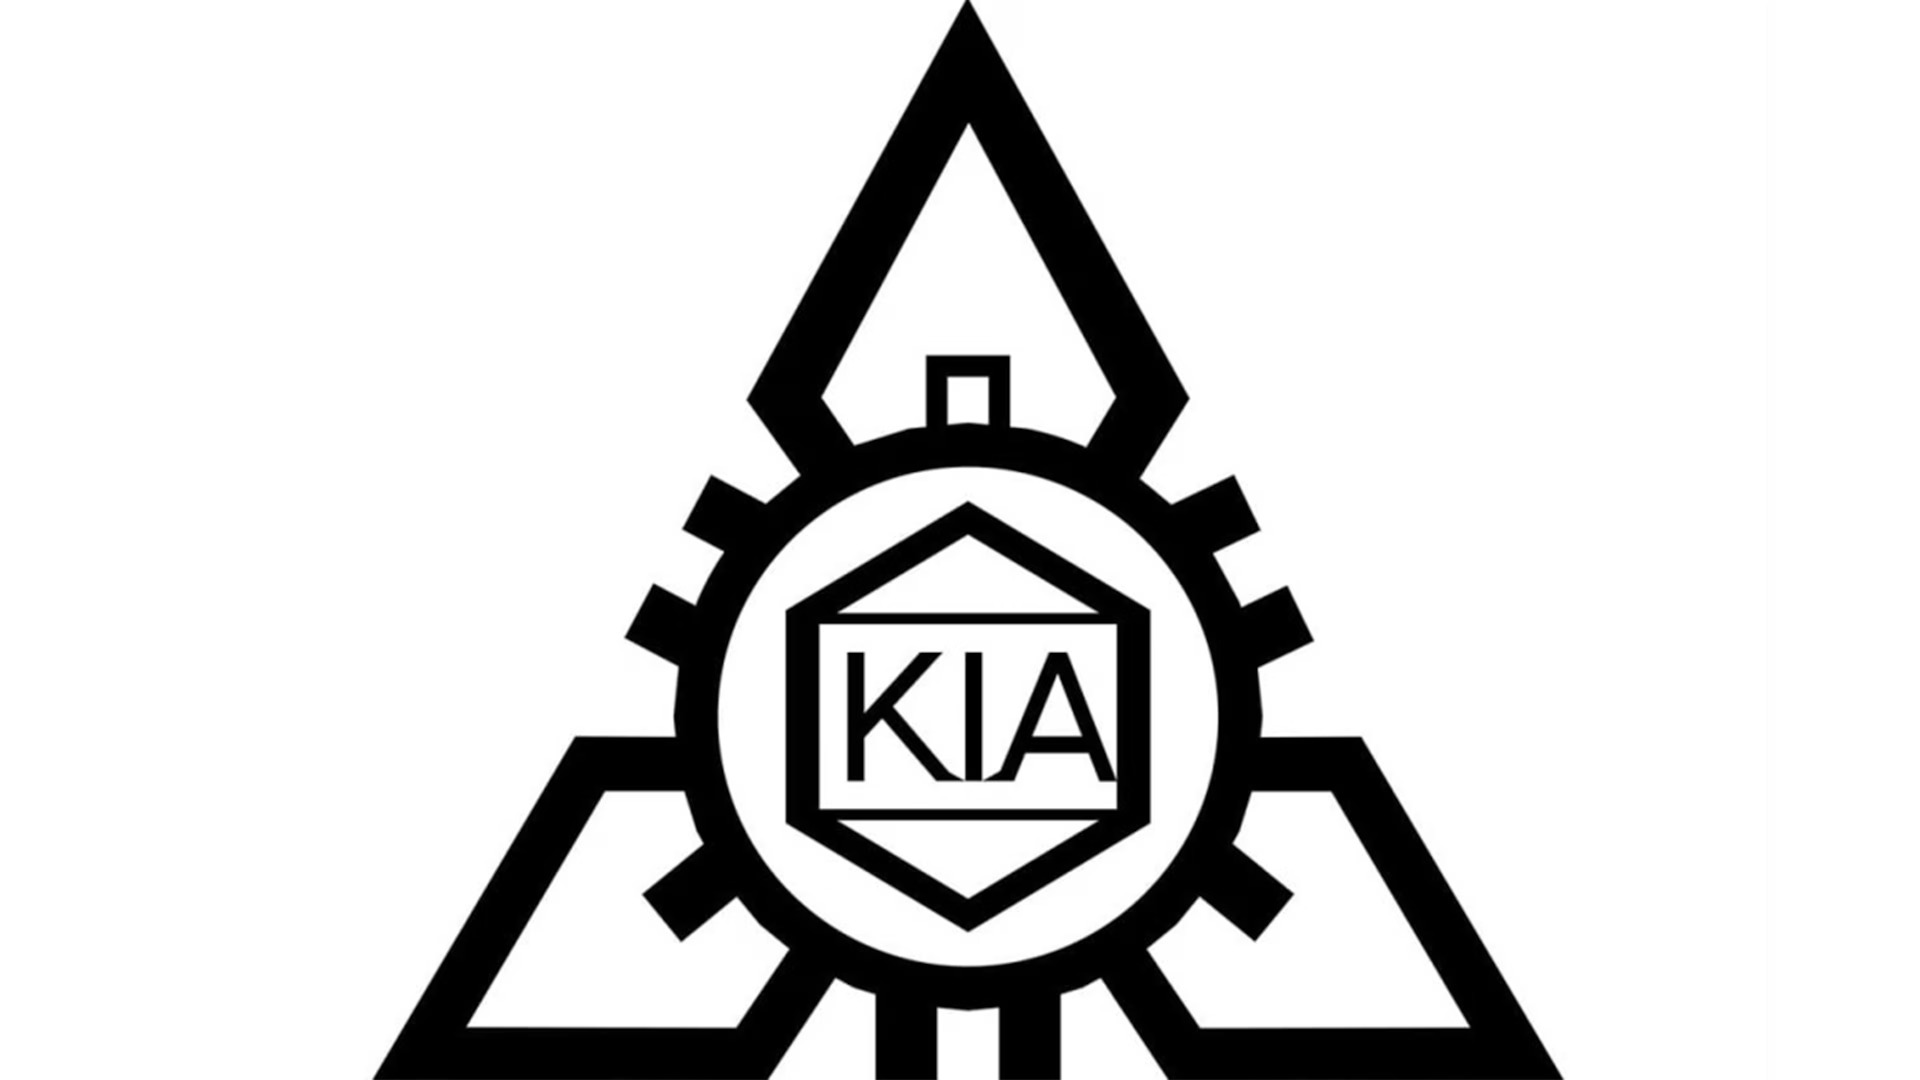 1953 to 1964: Kia’s First Logo